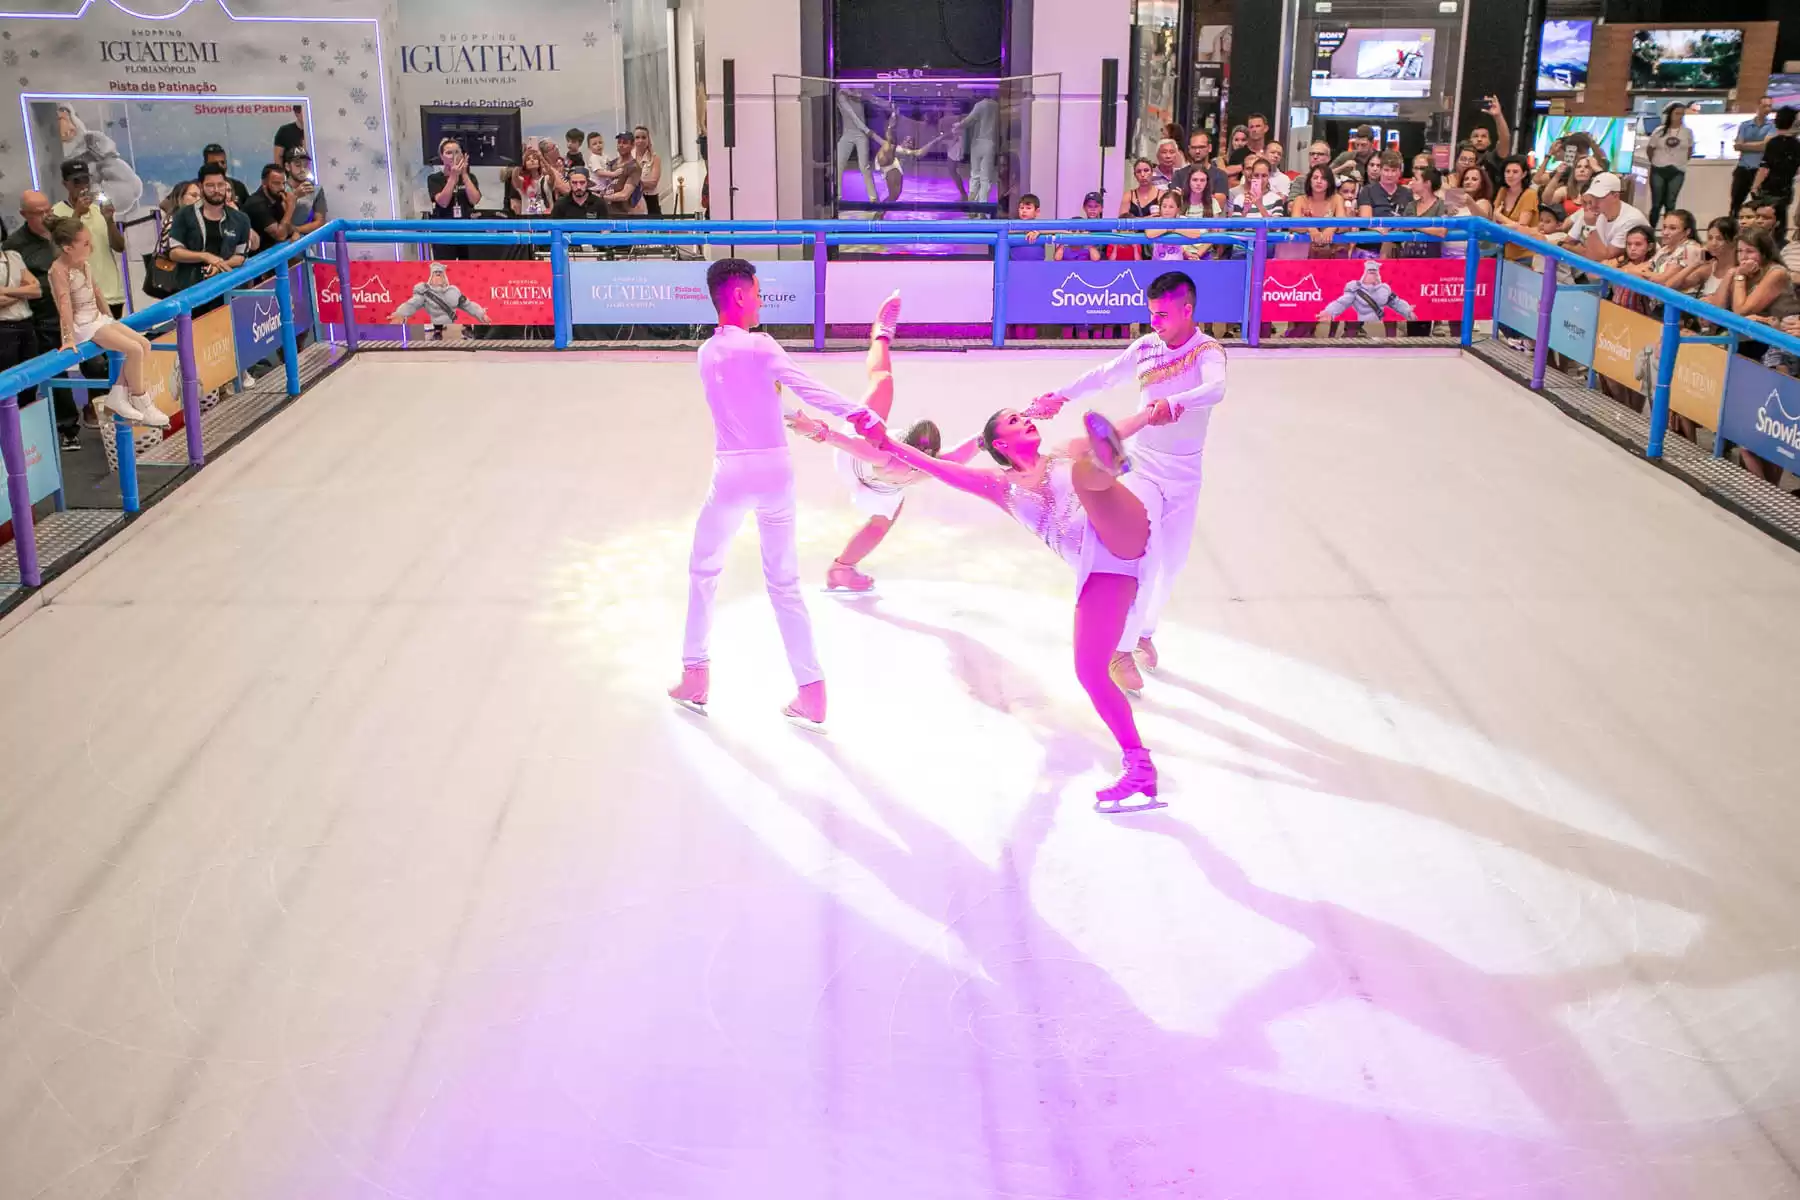 Villa Romana Shopping recebe pista de patinação no gelo